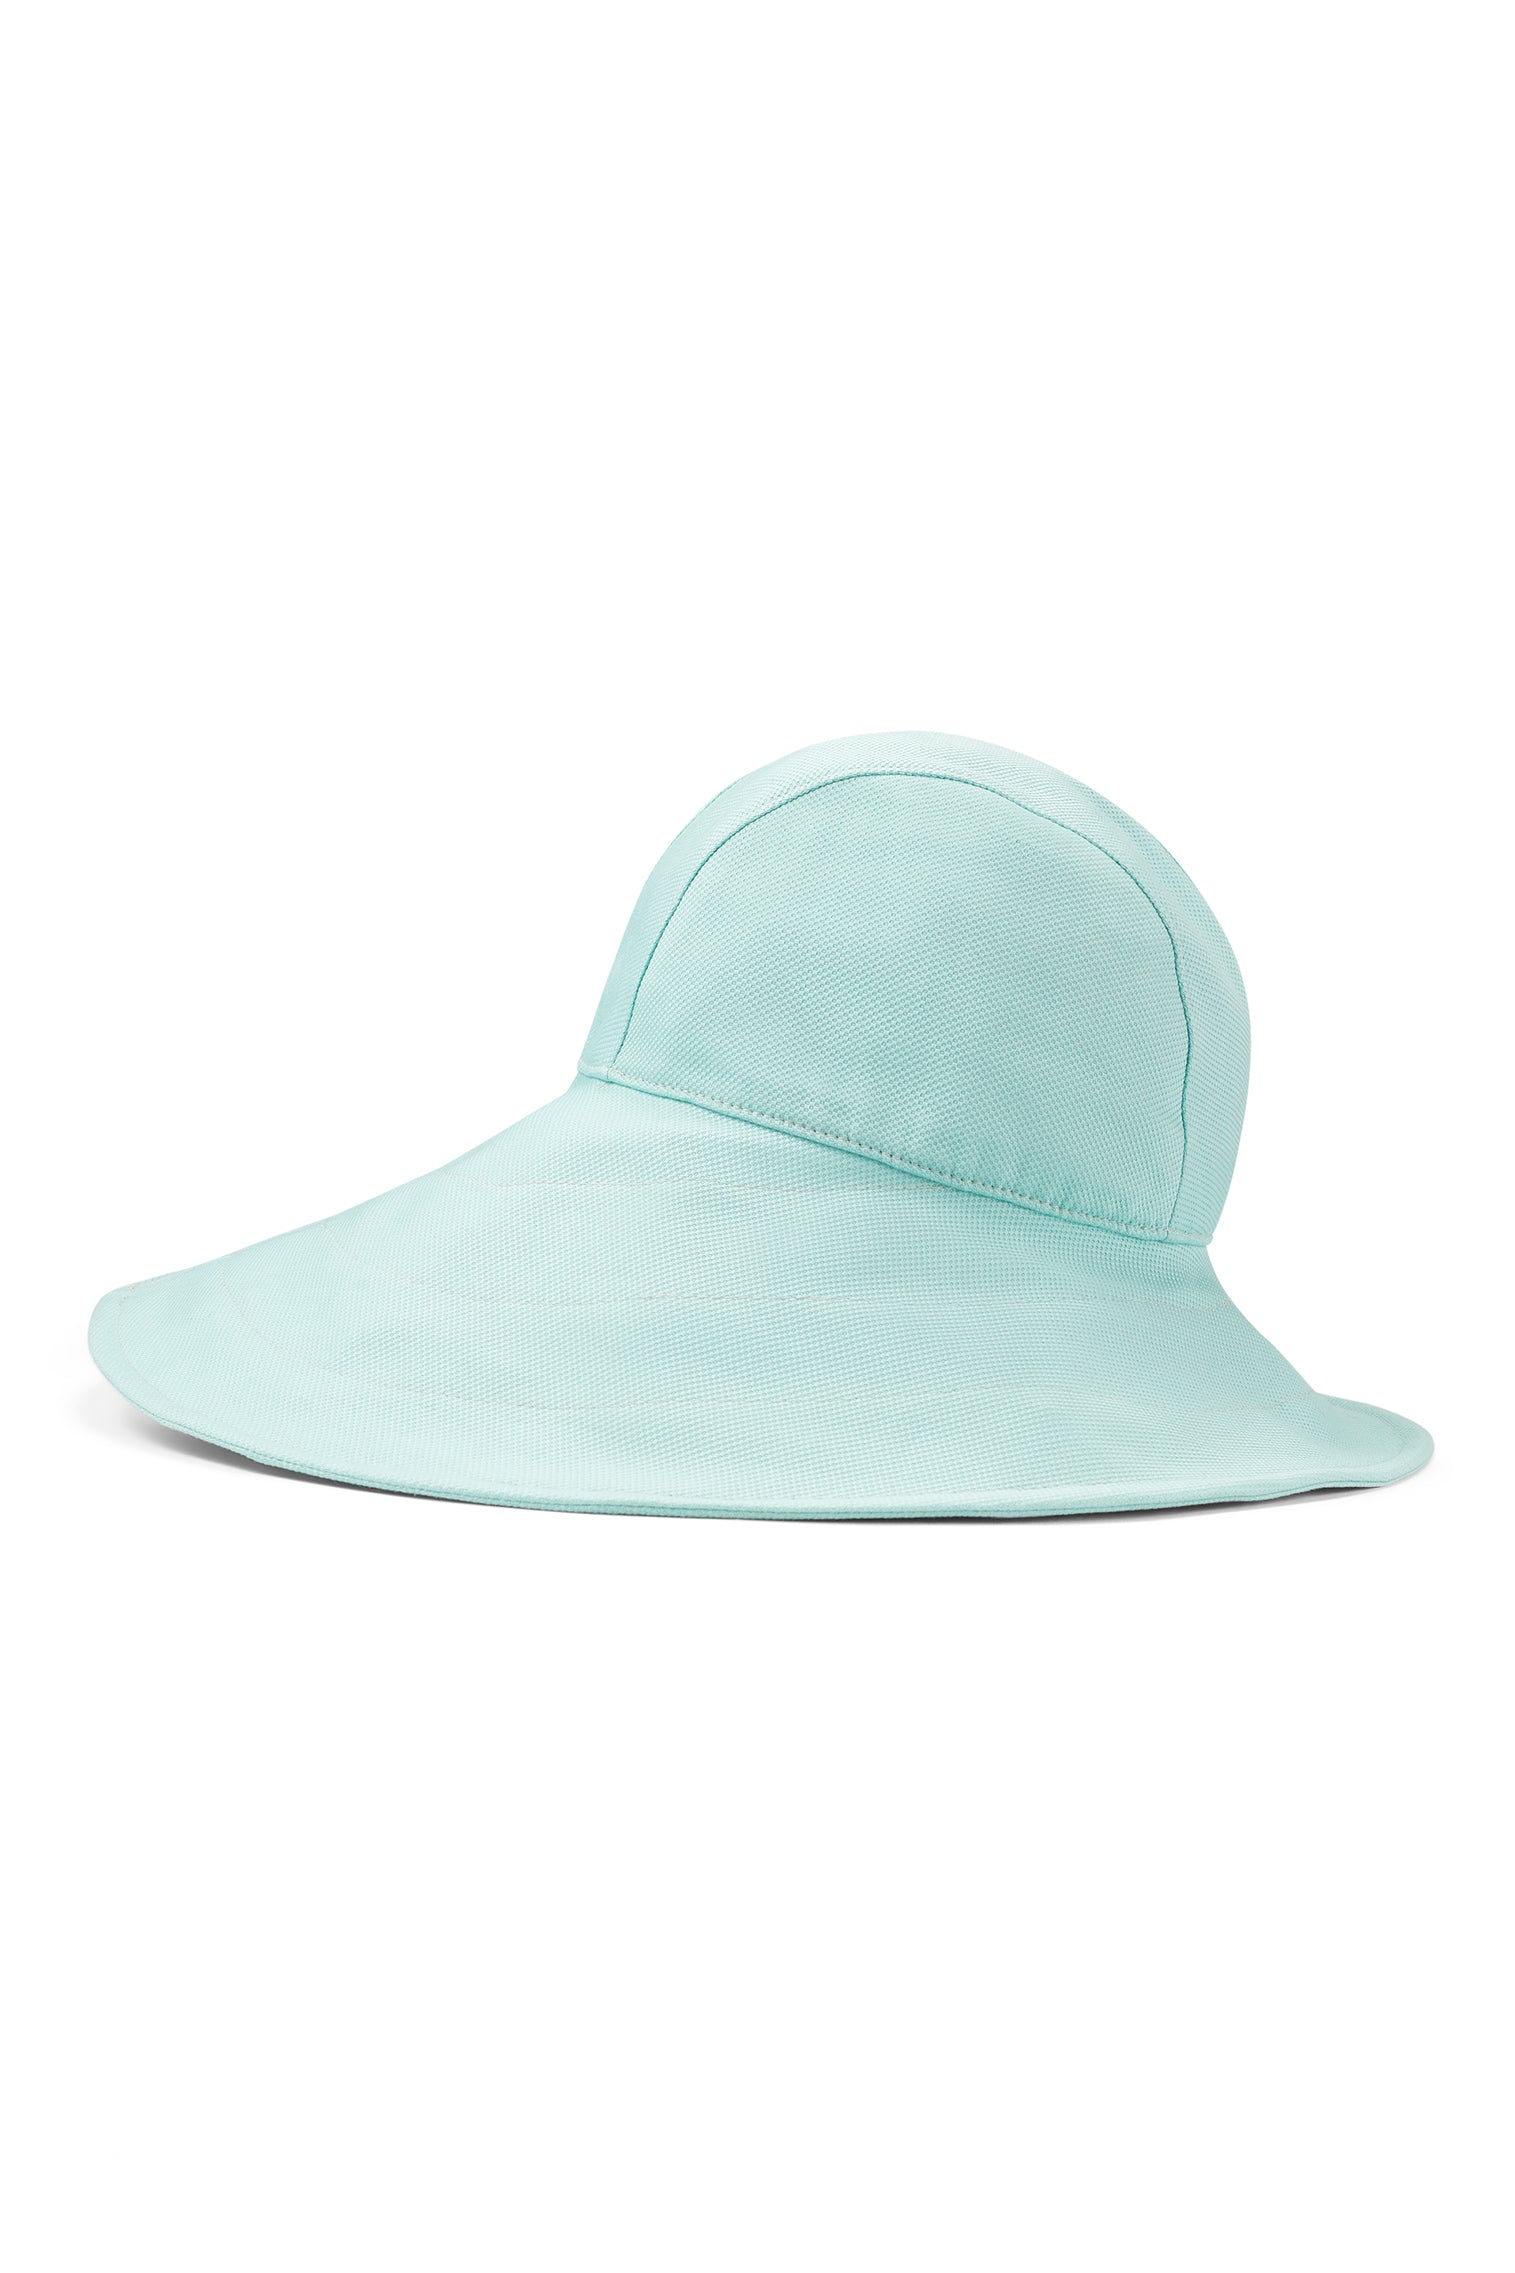 Elowyn Sou'Wester Sun Hat - Packable & Rollable Hats - Lock & Co. Hatters London UK